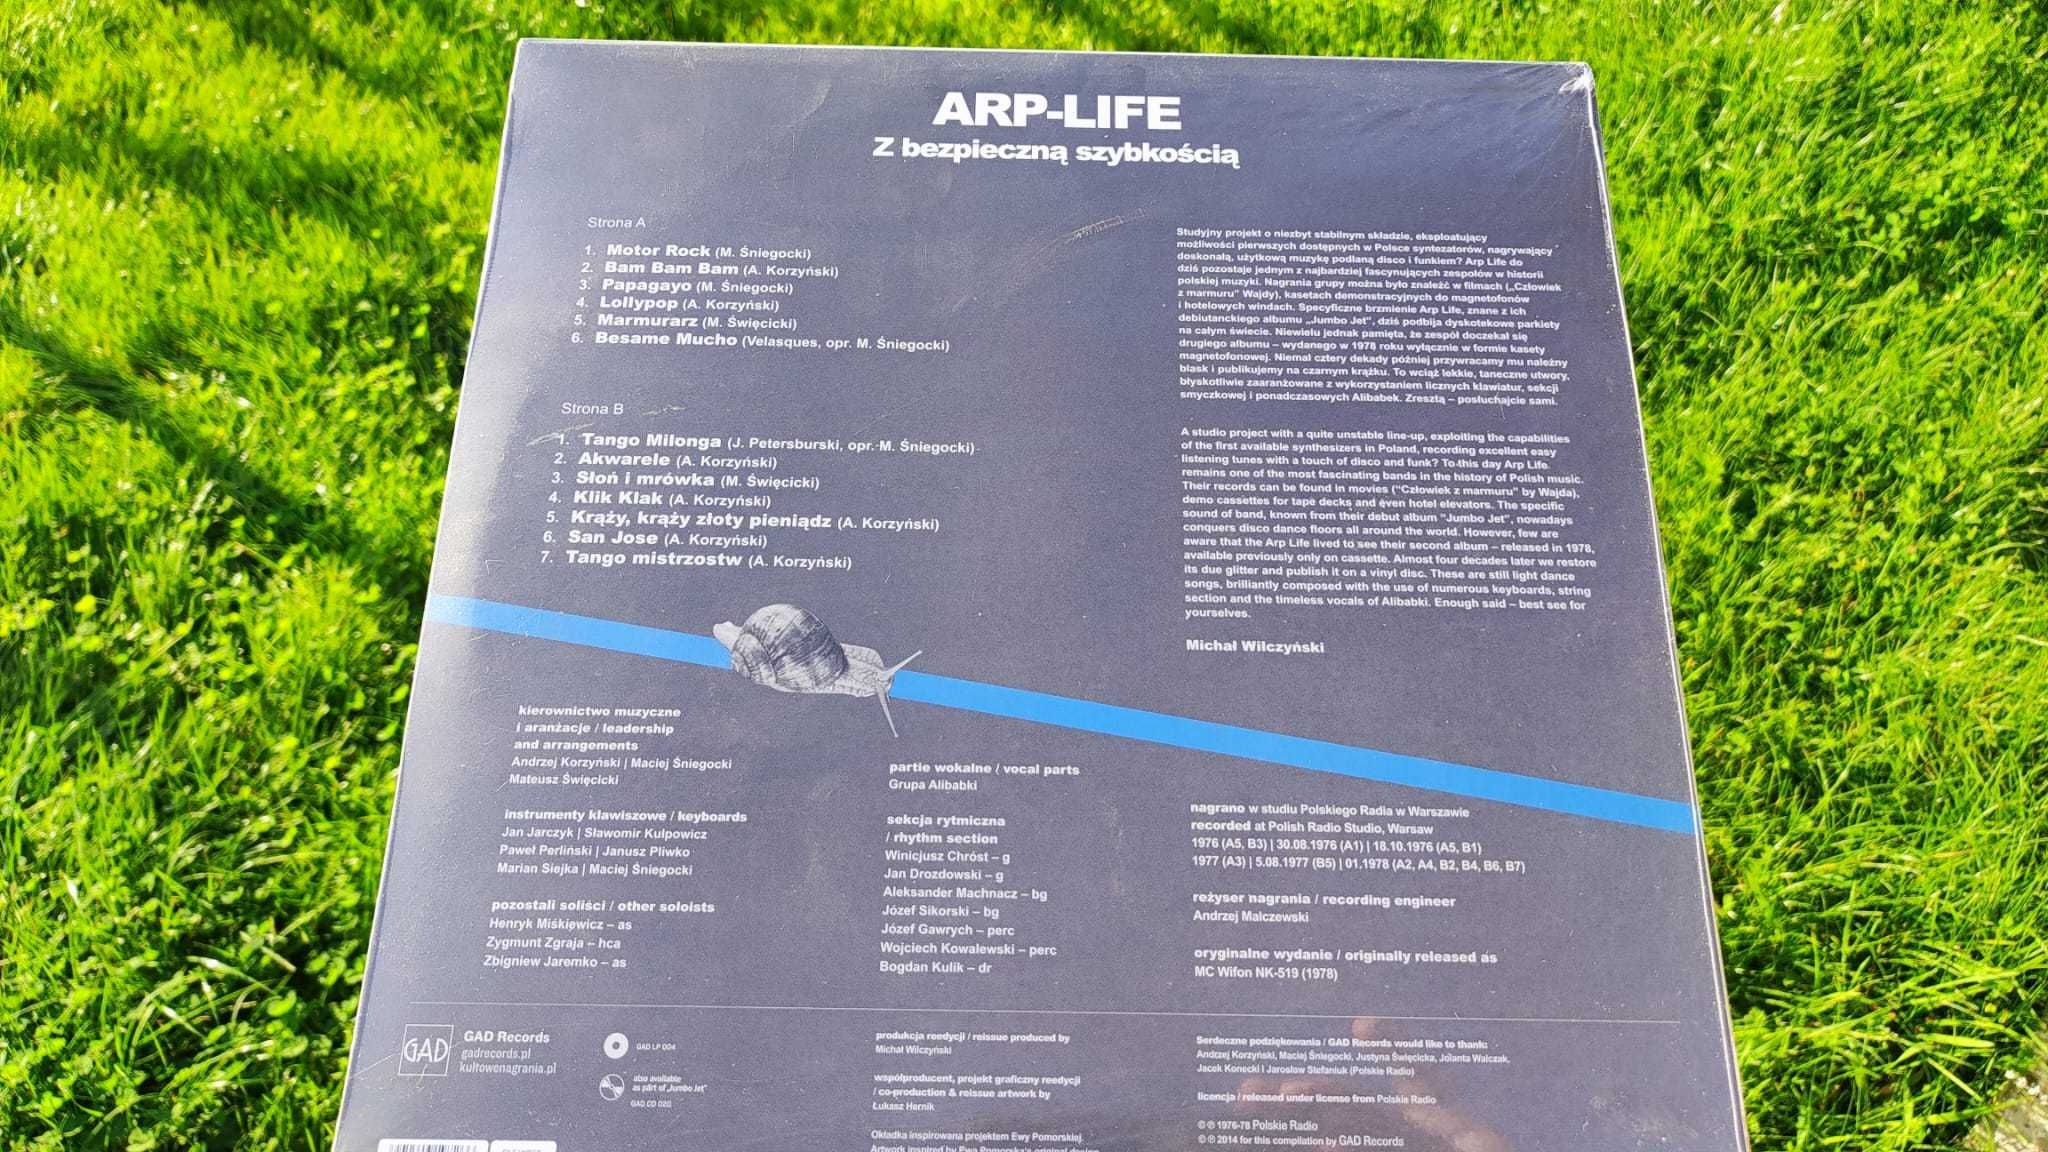 ARP-LIFE "Z Bezpieczną Szybkością" LP Czarny Winyl , Black Vinyl